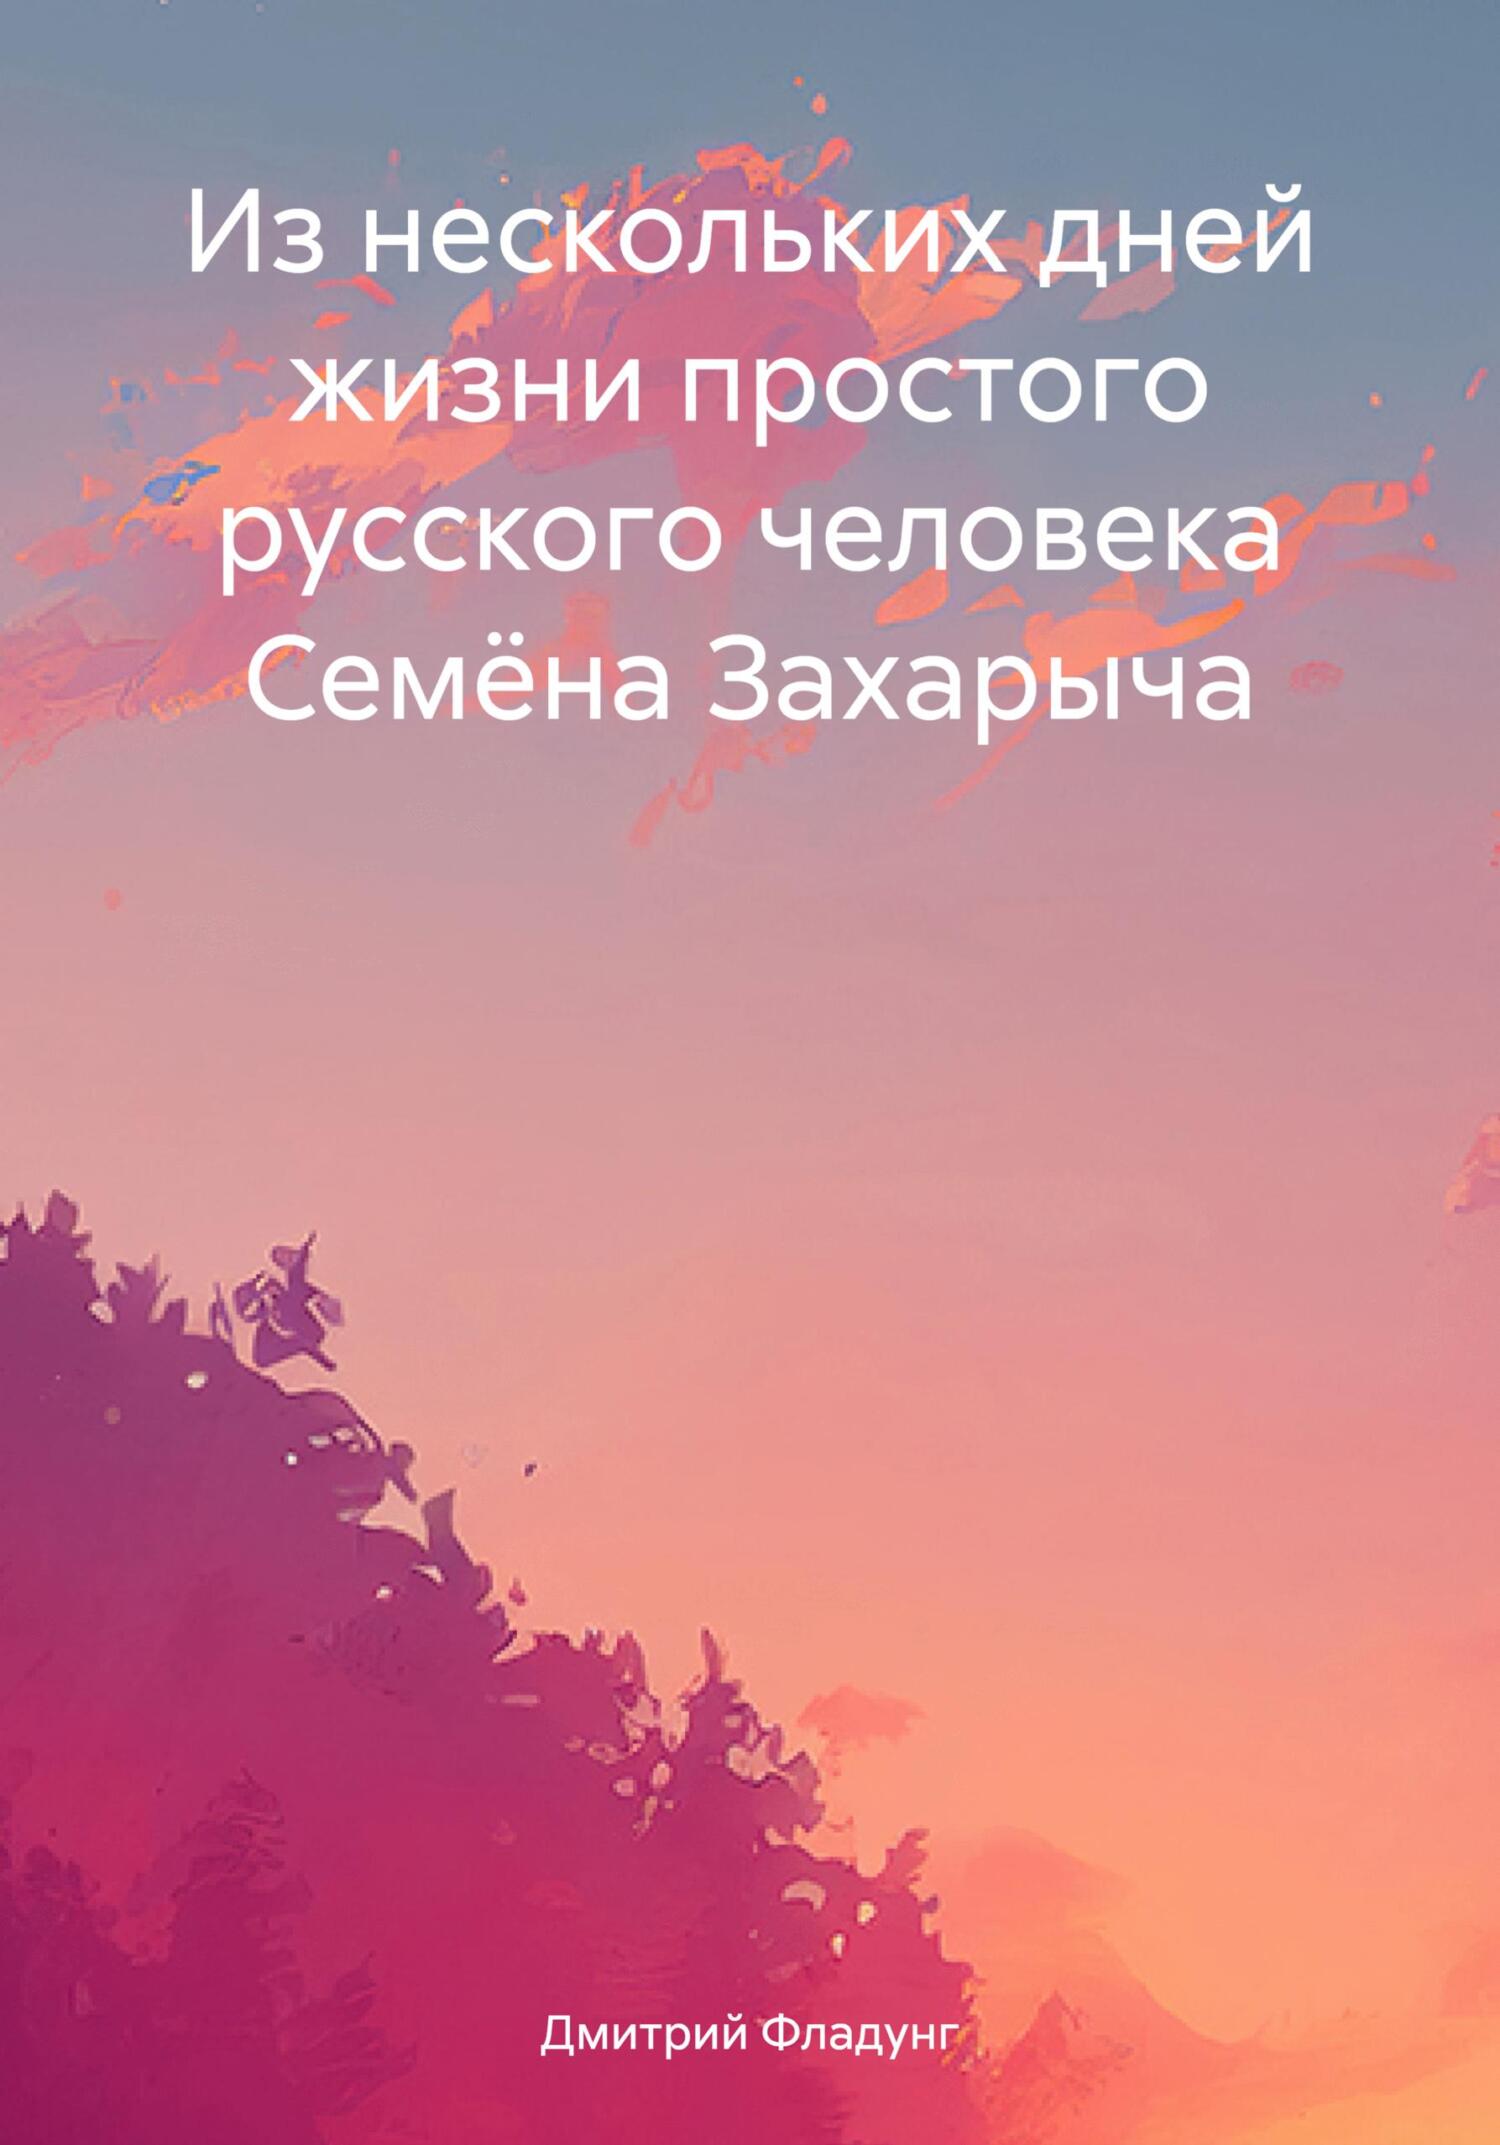 обложка книги Из нескольких дней жизни простого русского человека Семёна Захарыча